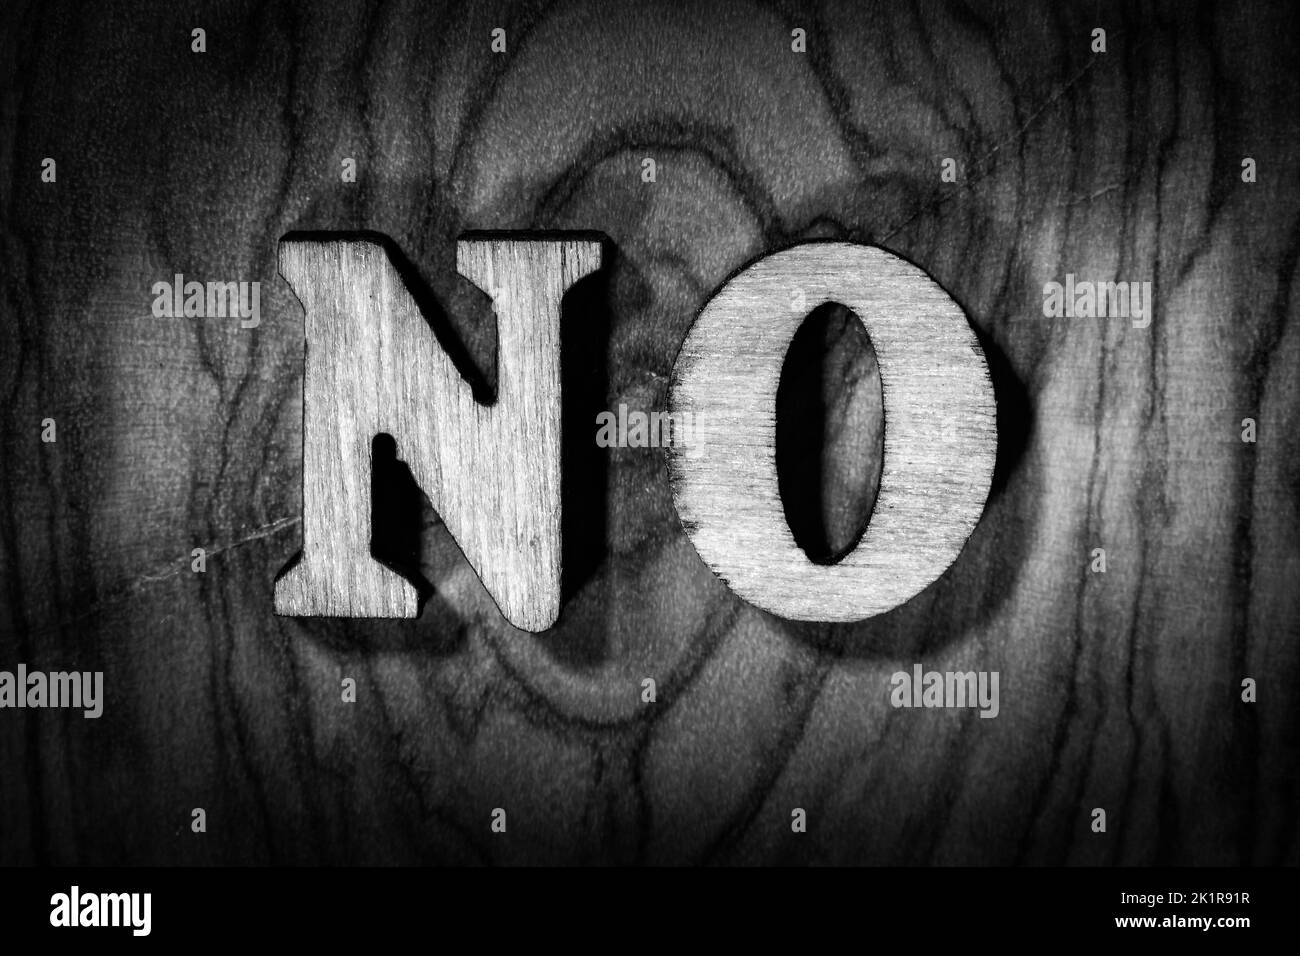 Palabra 'no' - Inscripción con letras de madera de cerca. Imagen en blanco y negro Foto de stock